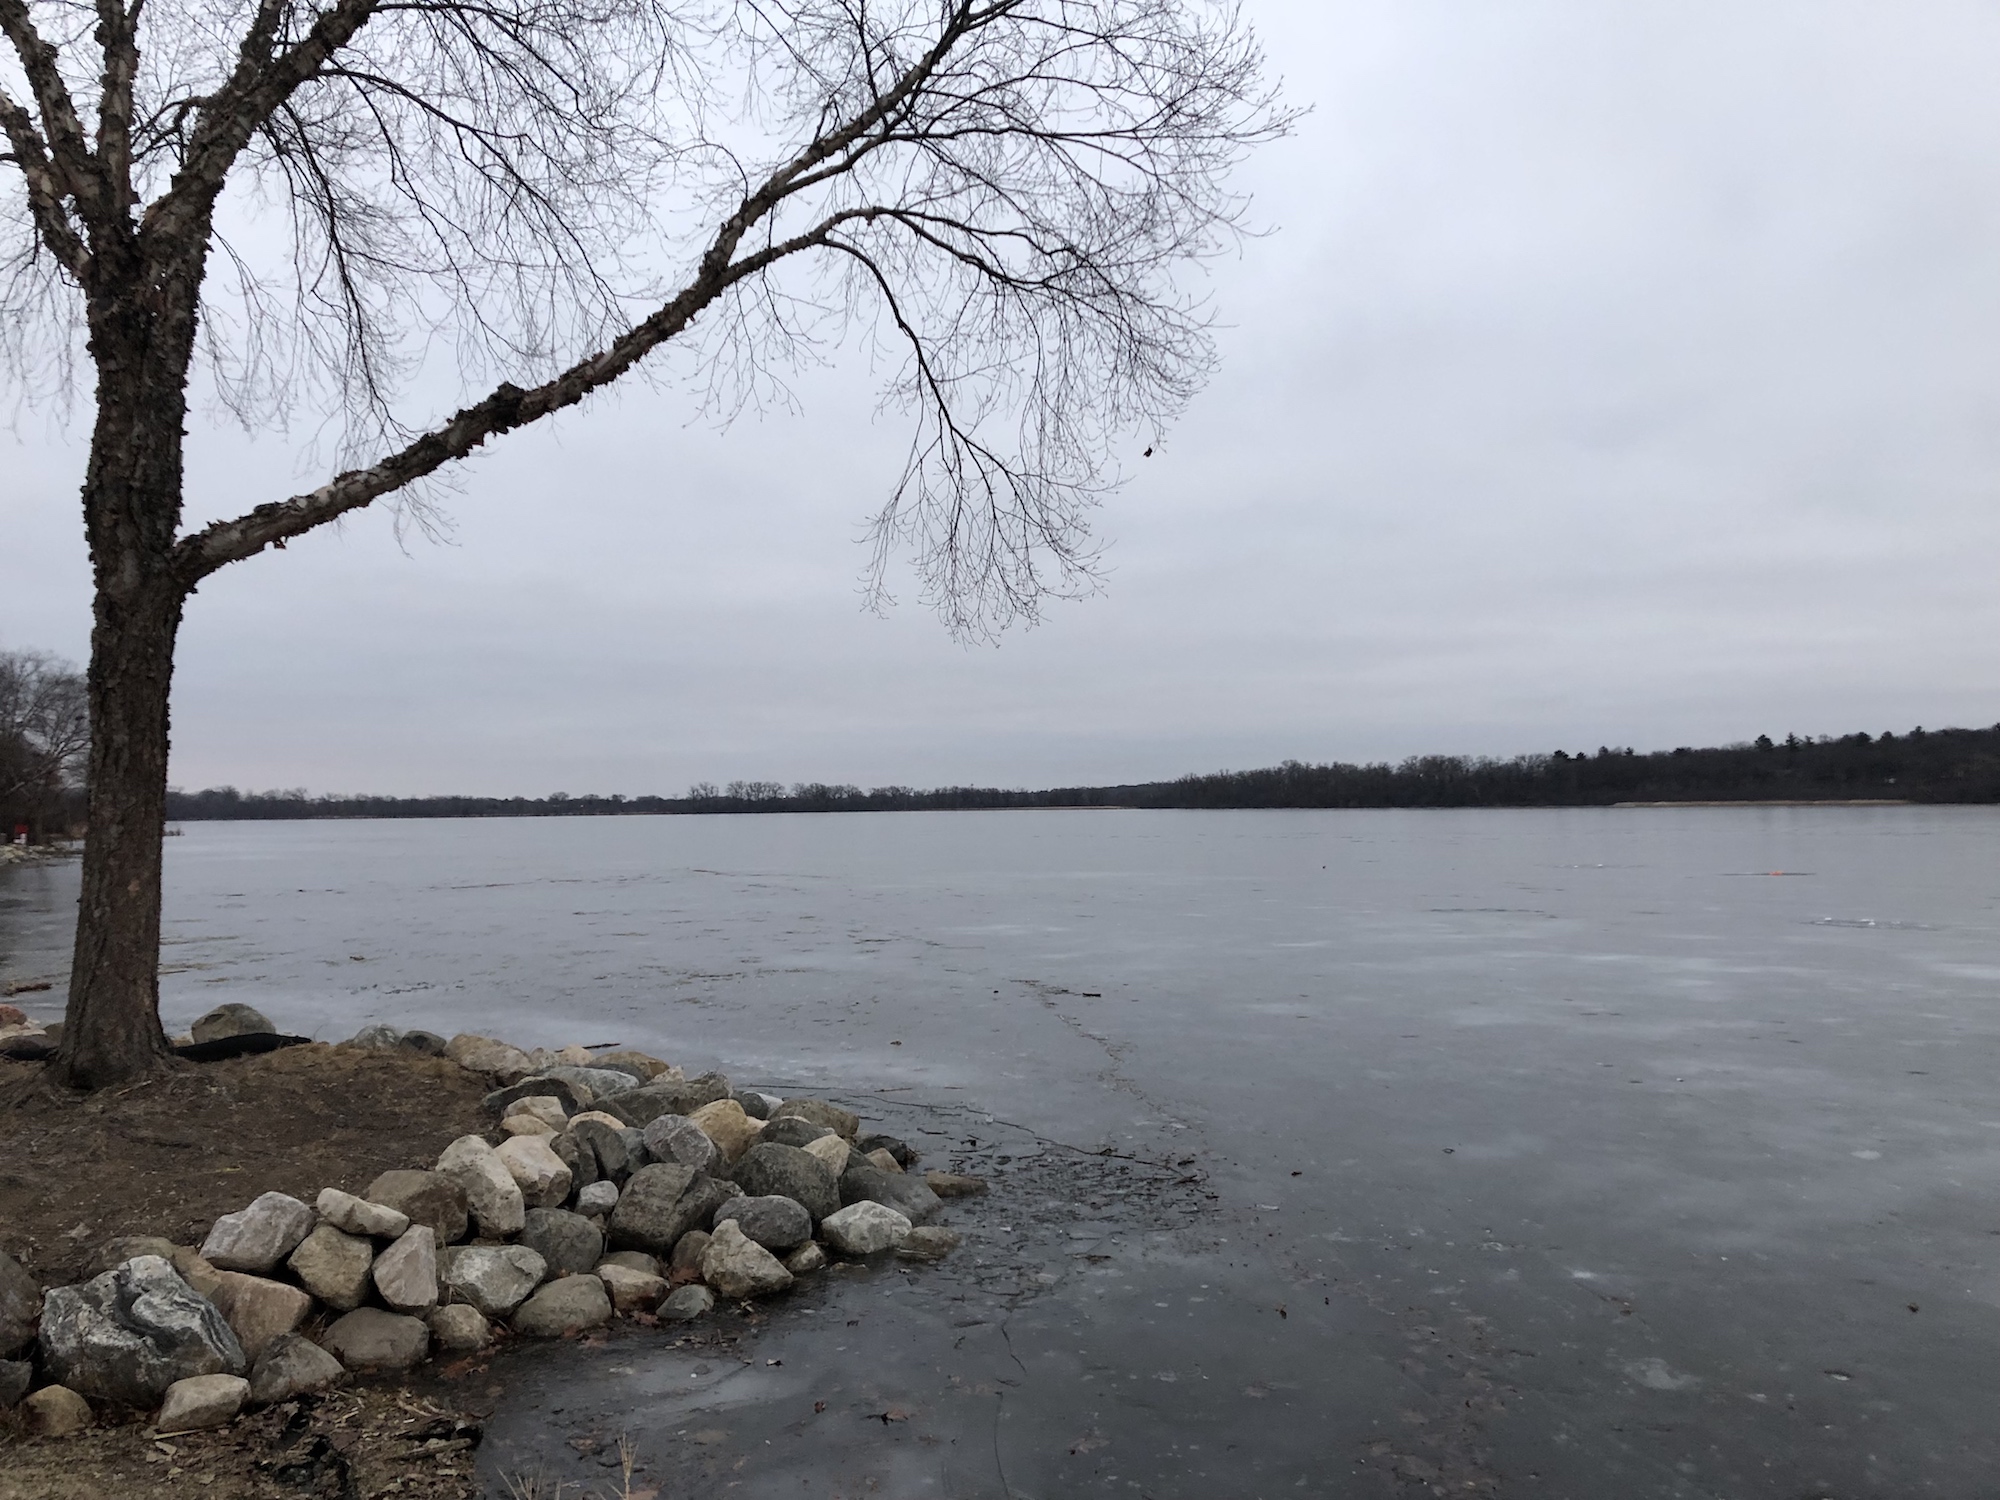 Lake Wingra on December 22, 2018.